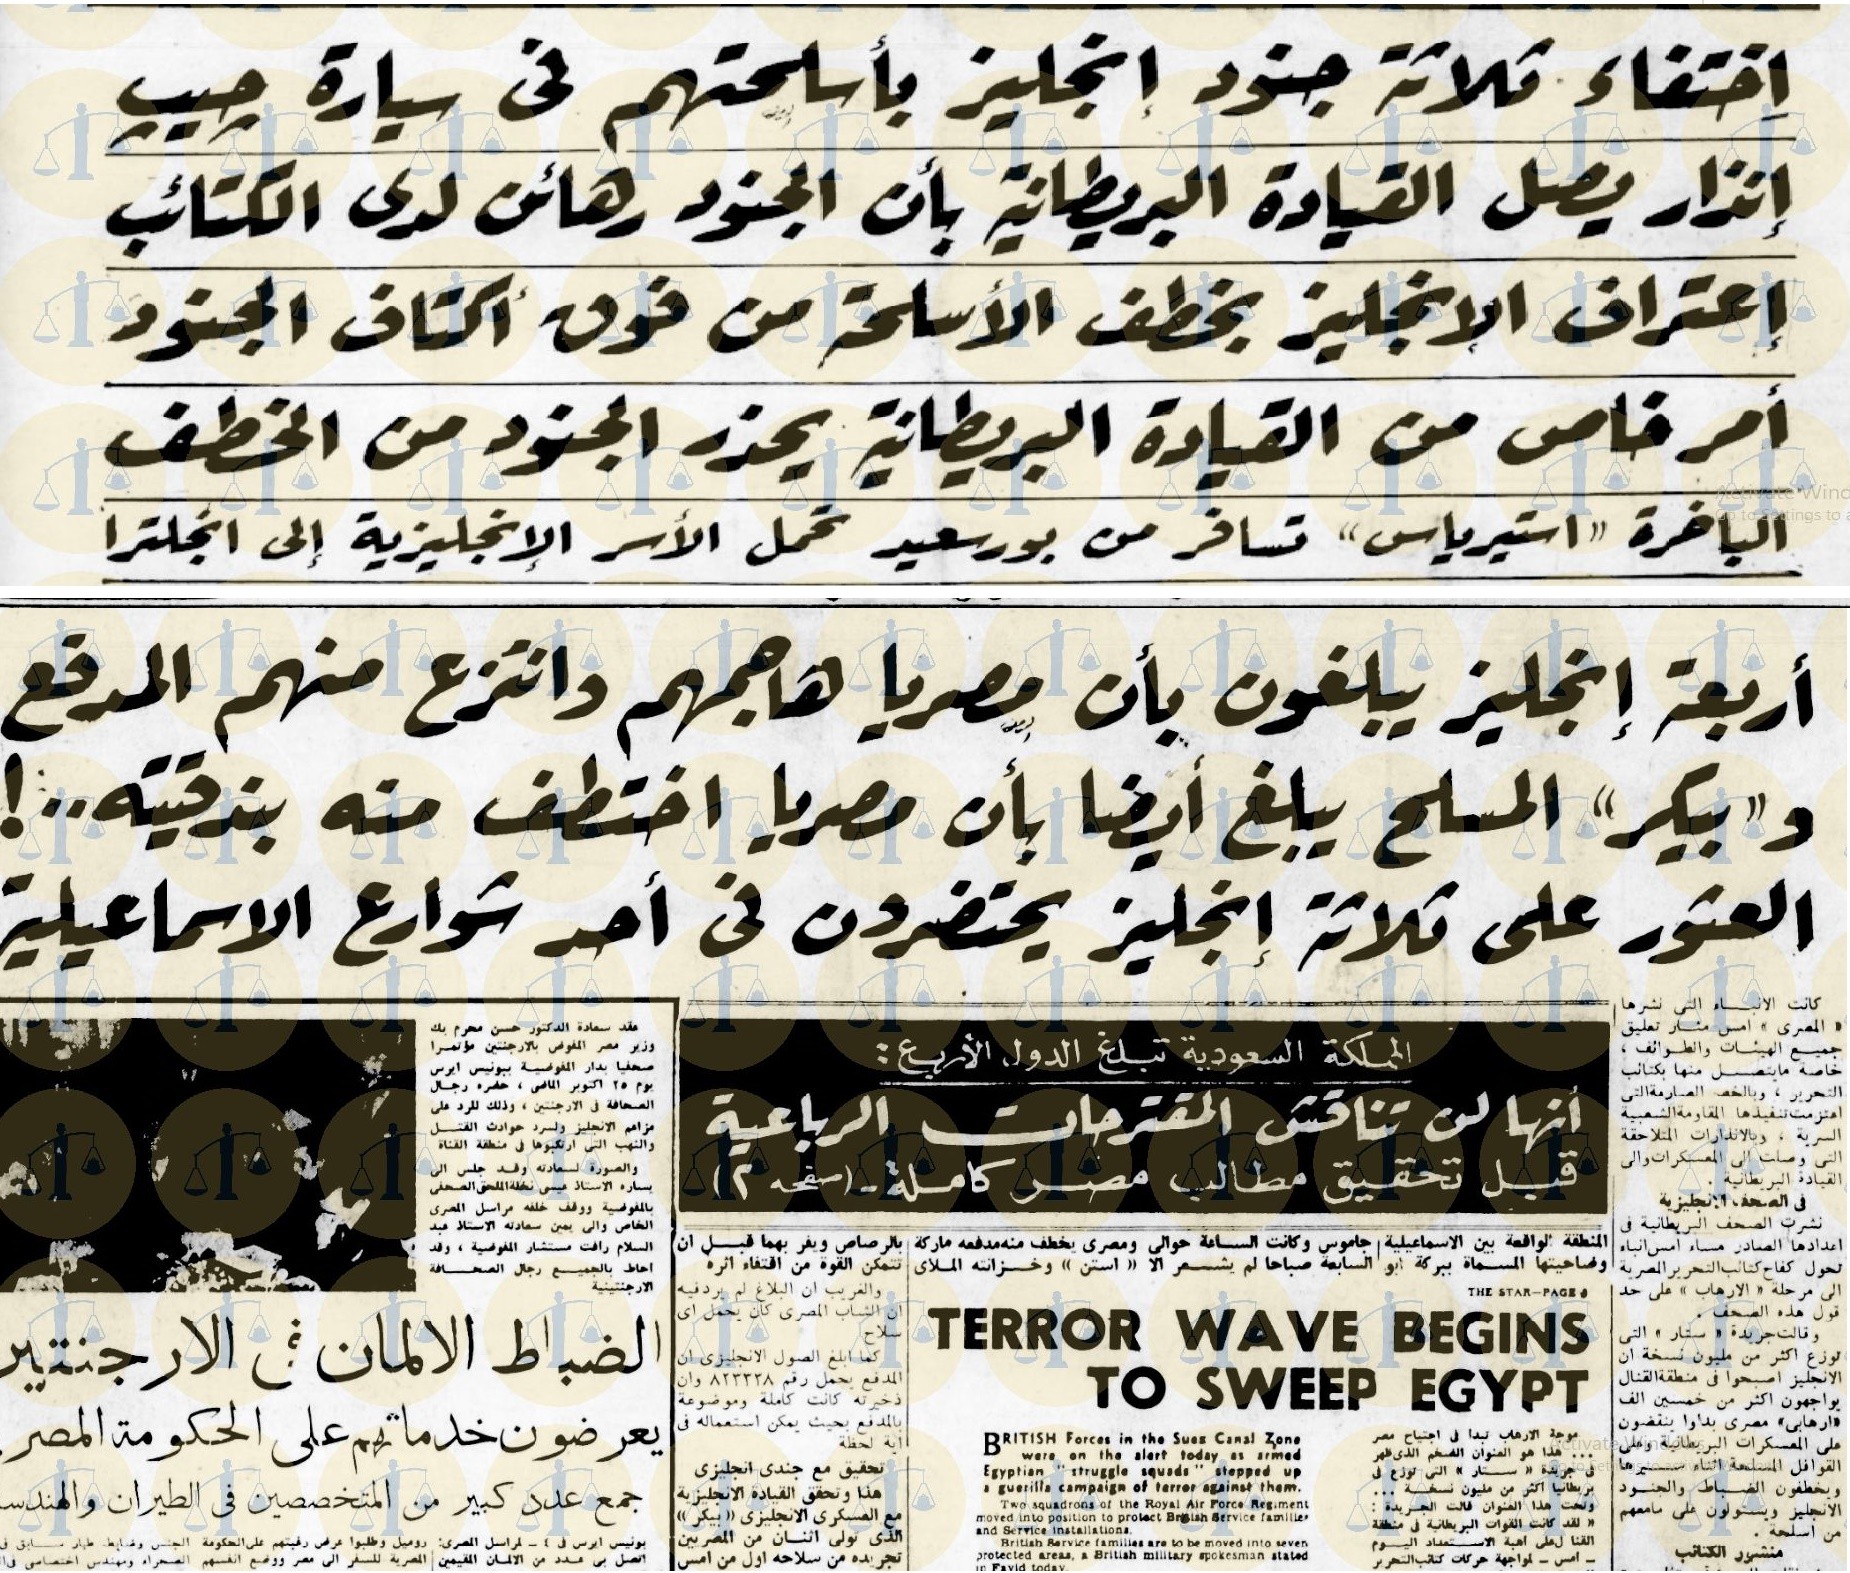  يوم 4 نوفمبر 1951 - رد الكتائب على الخطف